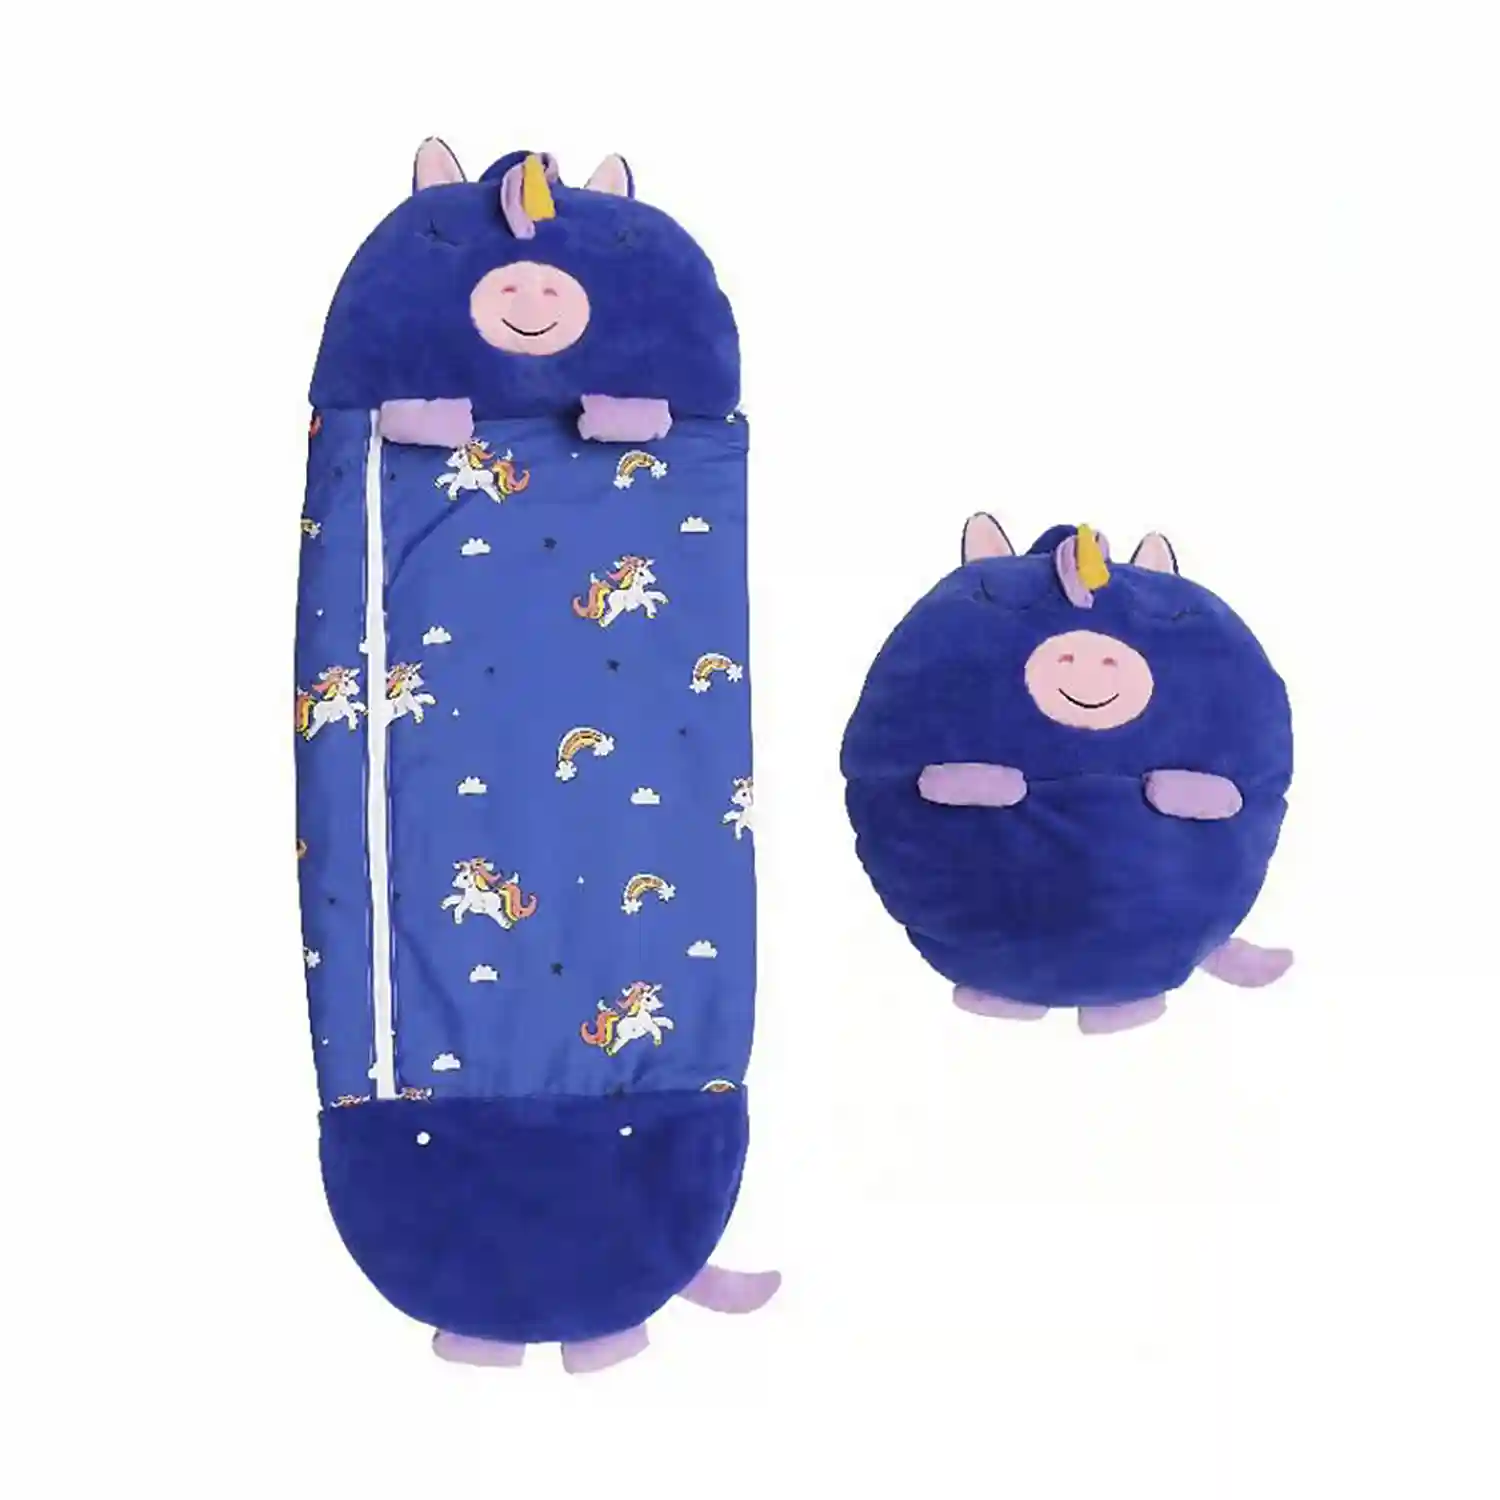 Saco para dormir para dormir niño azul Disney modelo LILO – Conceptos